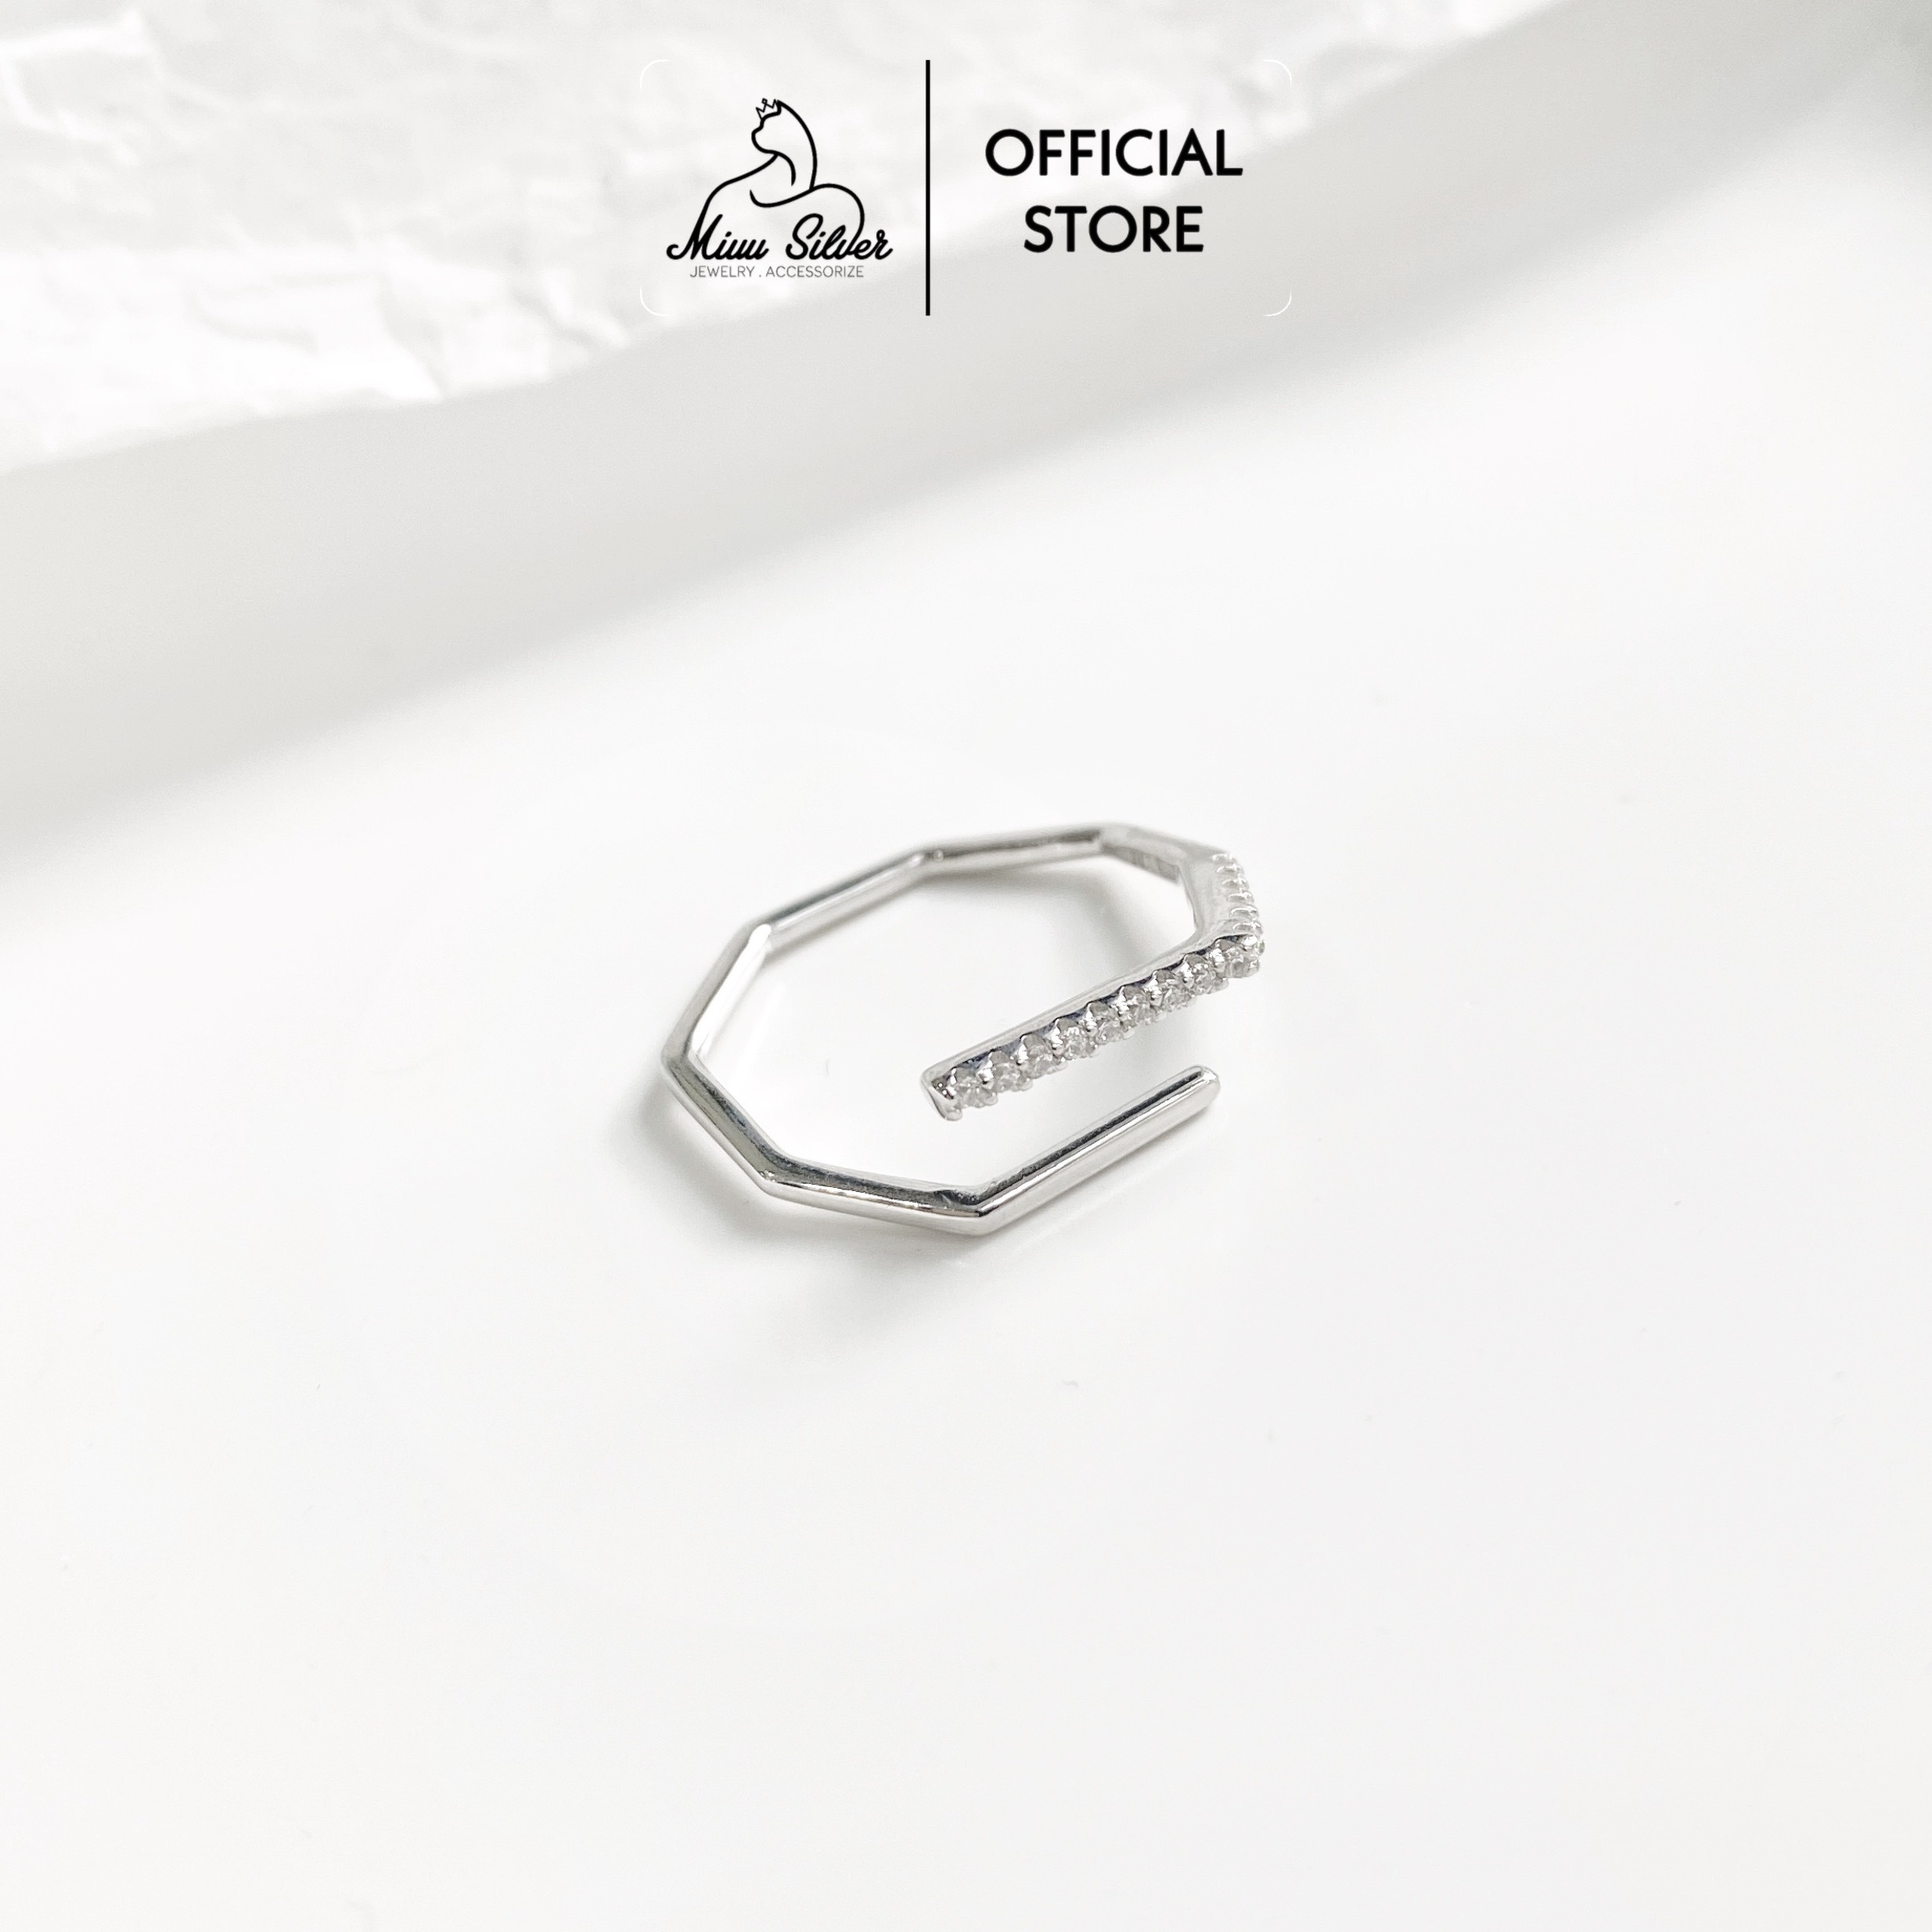 Nhẫn bạc nữ Miuu Silver, nhẫn nữ bạc 925 đính đá thời trang, nhẫn hở điều chỉnh size 1D Line Ring thumbnail